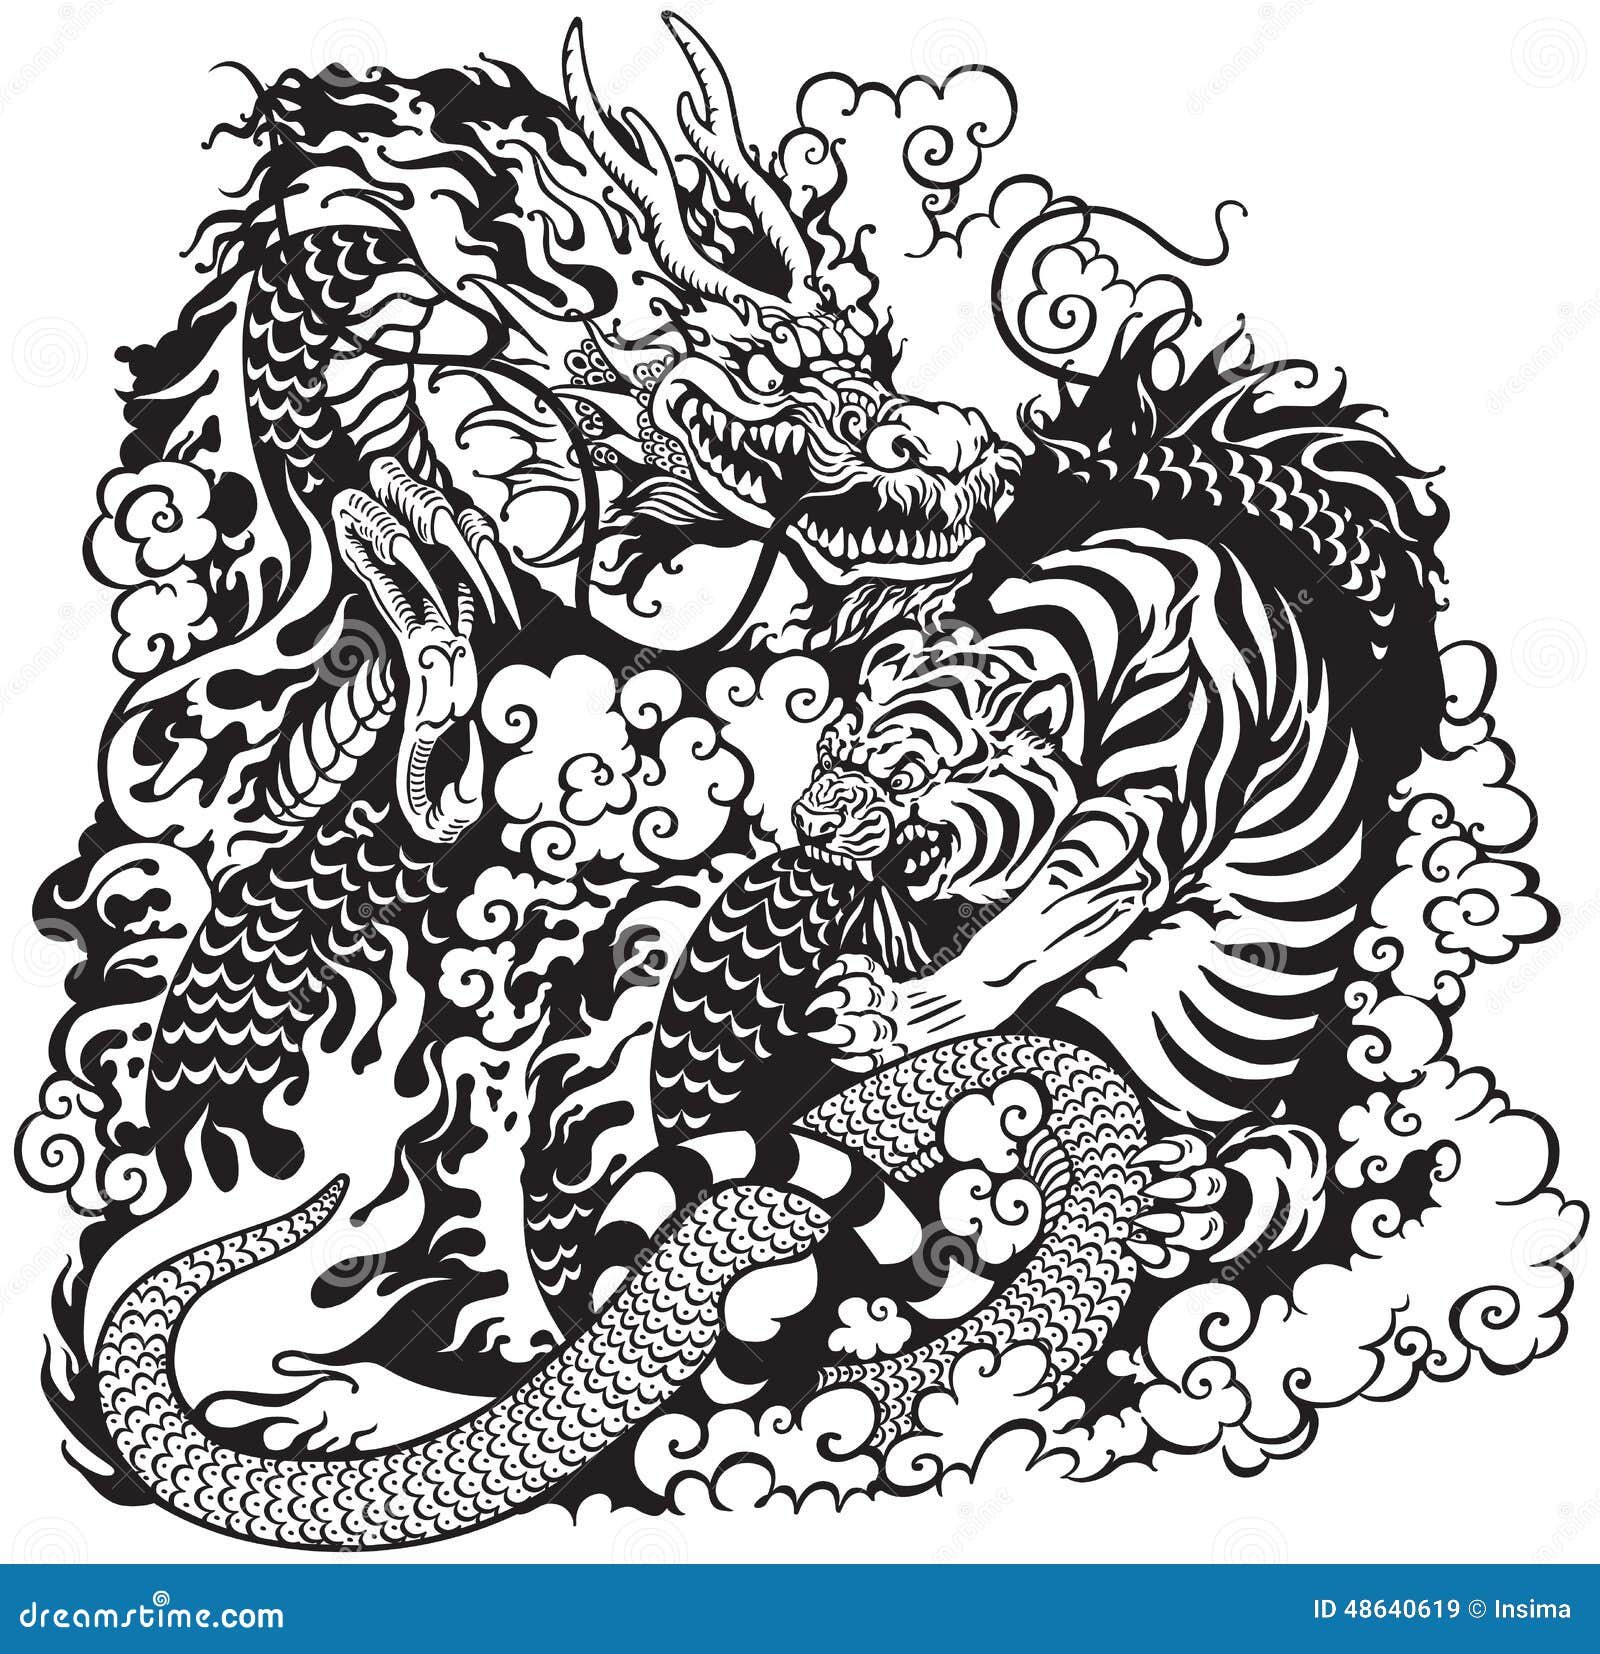 Tiger and Dragon Fight tattoo by Chapel tattoo  Best Tattoo Ideas Gallery